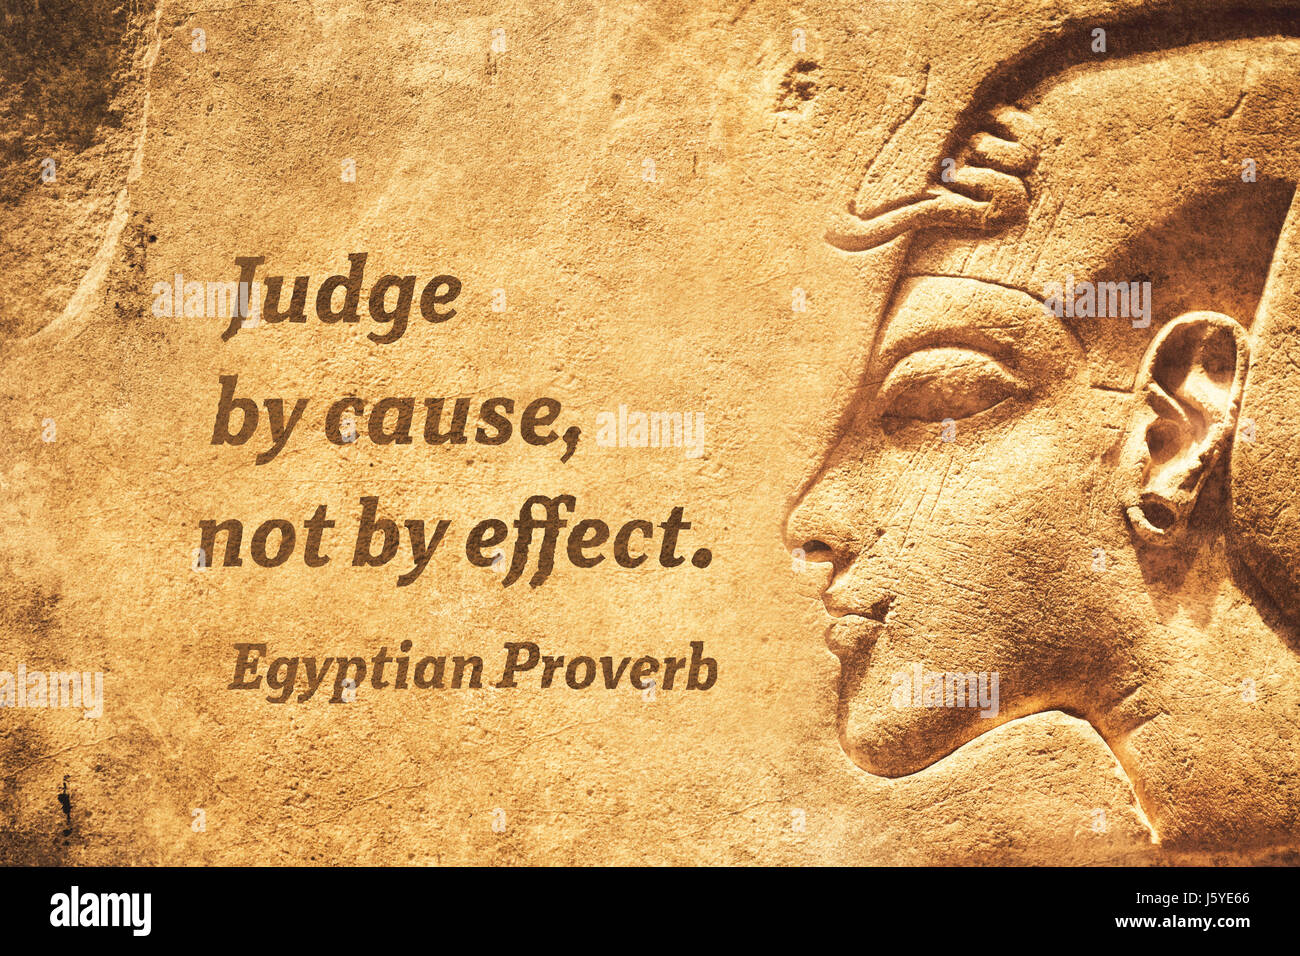 Beurteilen von Ursache, nicht von Effekt - antiken ägyptischen Sprichwort zitieren Stockfoto